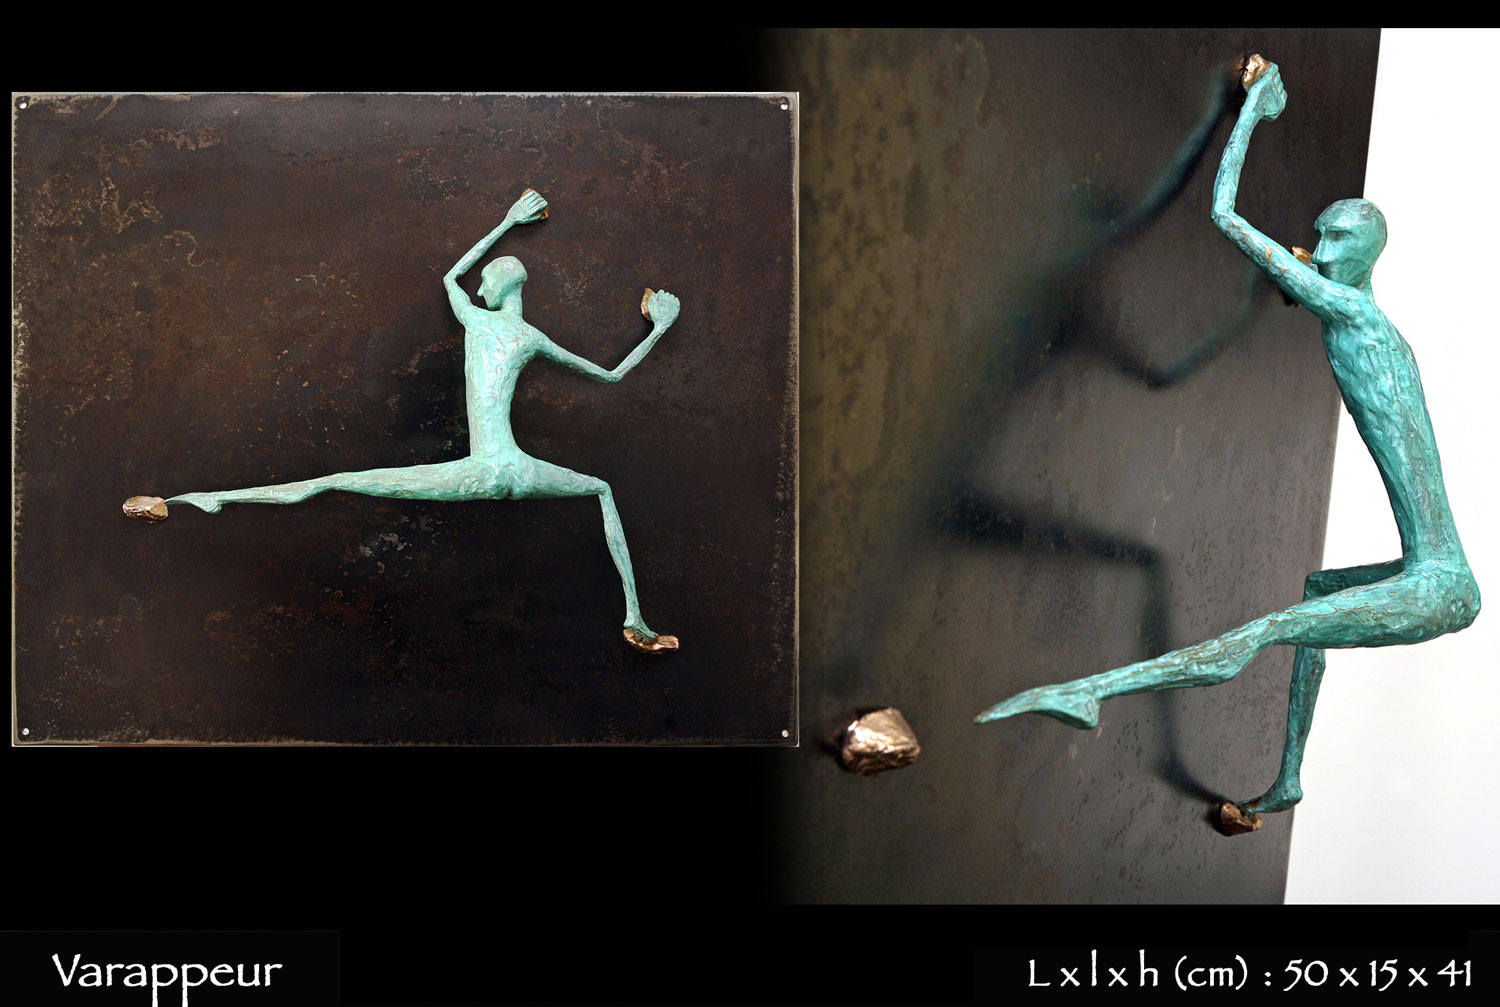 Personnage en bronze faisant de la varappe sur une paroi en métal